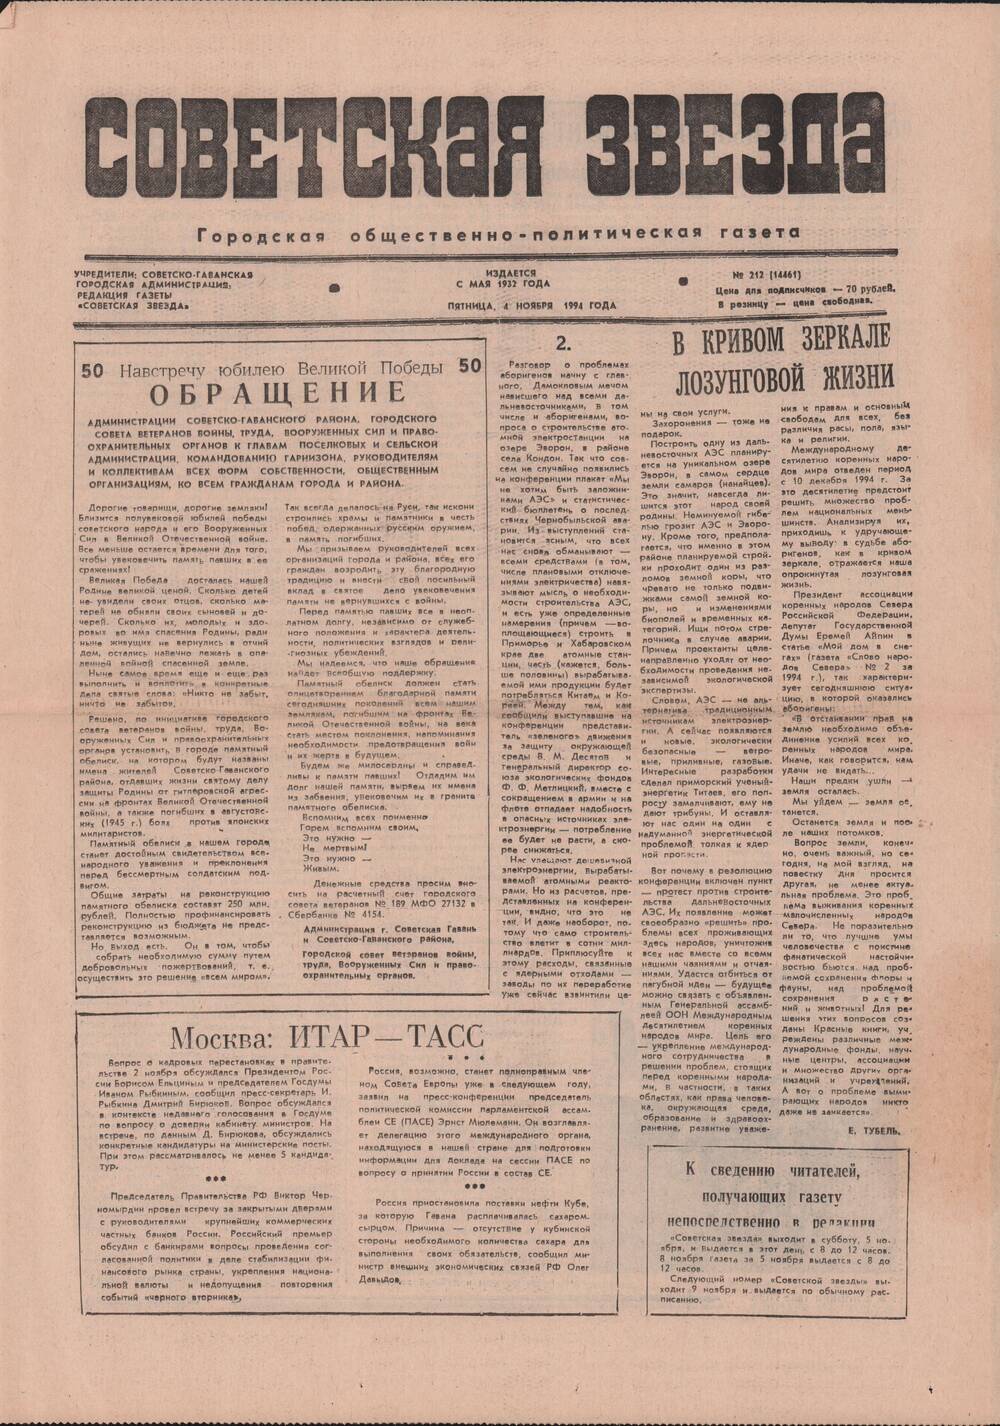 Газета «Советская звезда» № 212 (14461) от 04.11.1994 под рубрикой «50 лет Великой Победы».